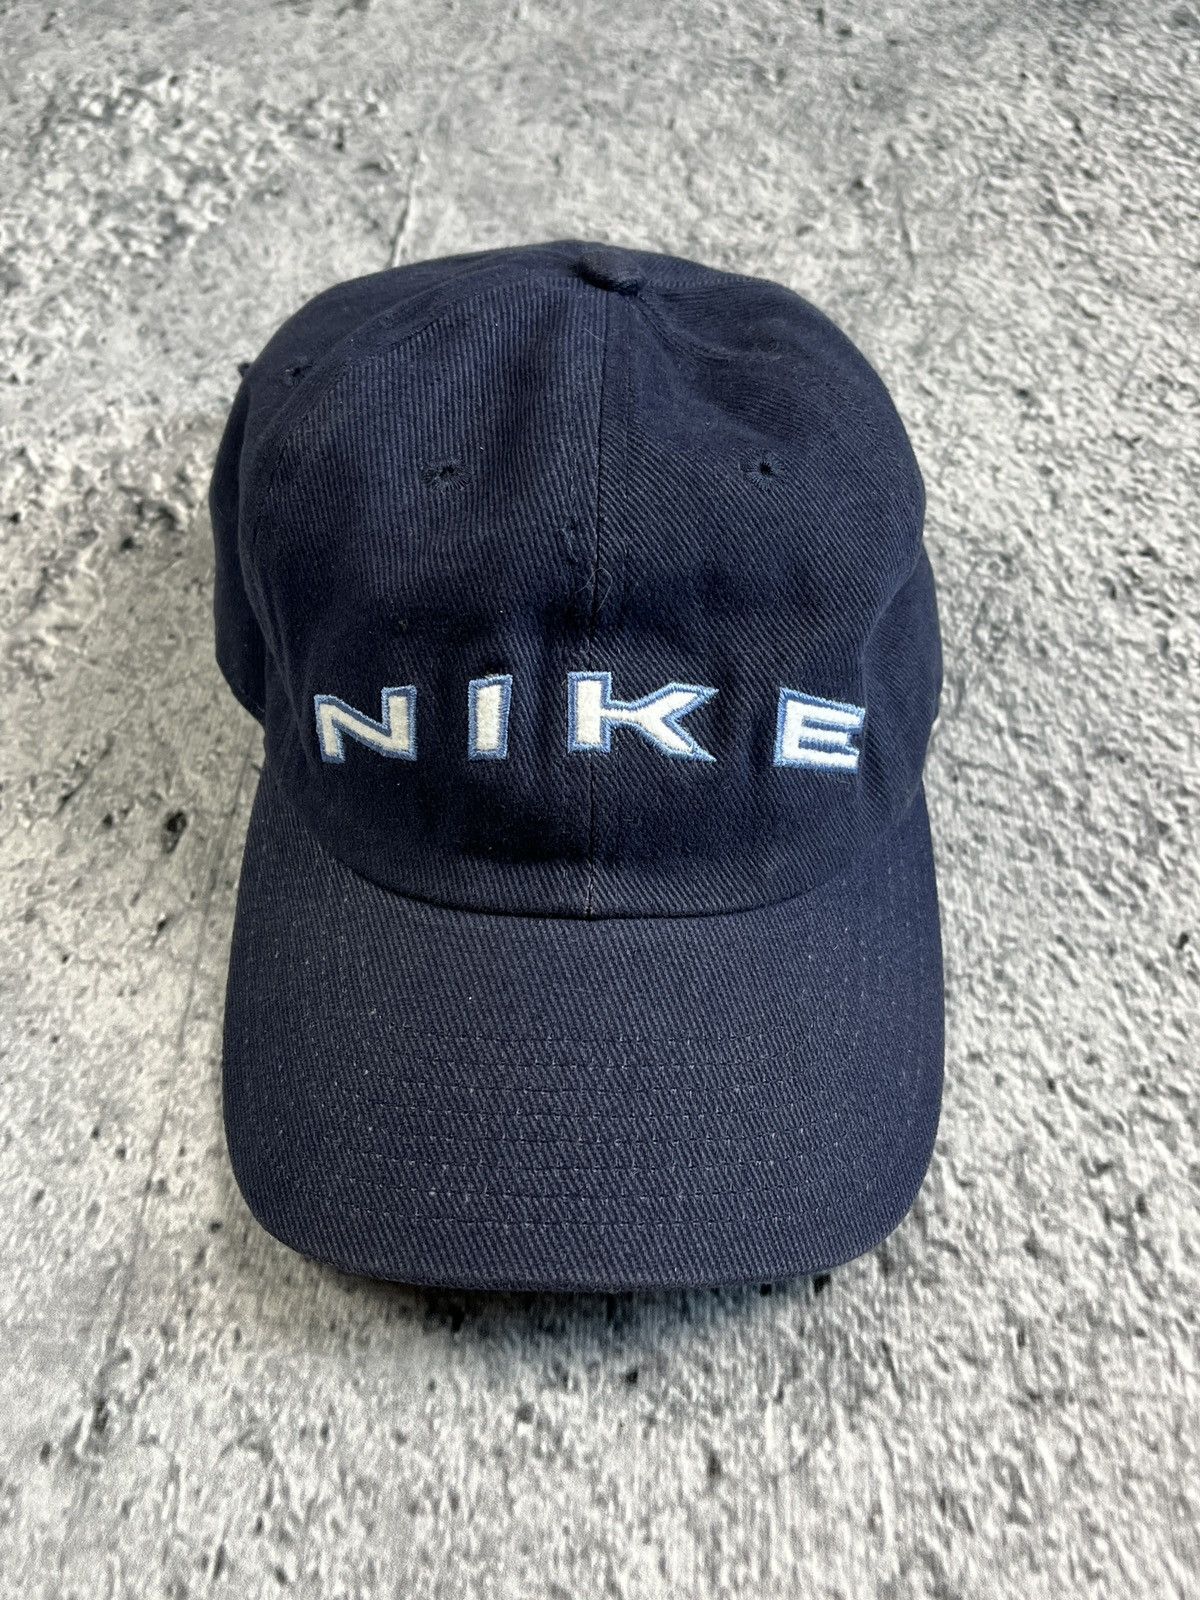 Nike Nike Vintage Cap Hat | Grailed